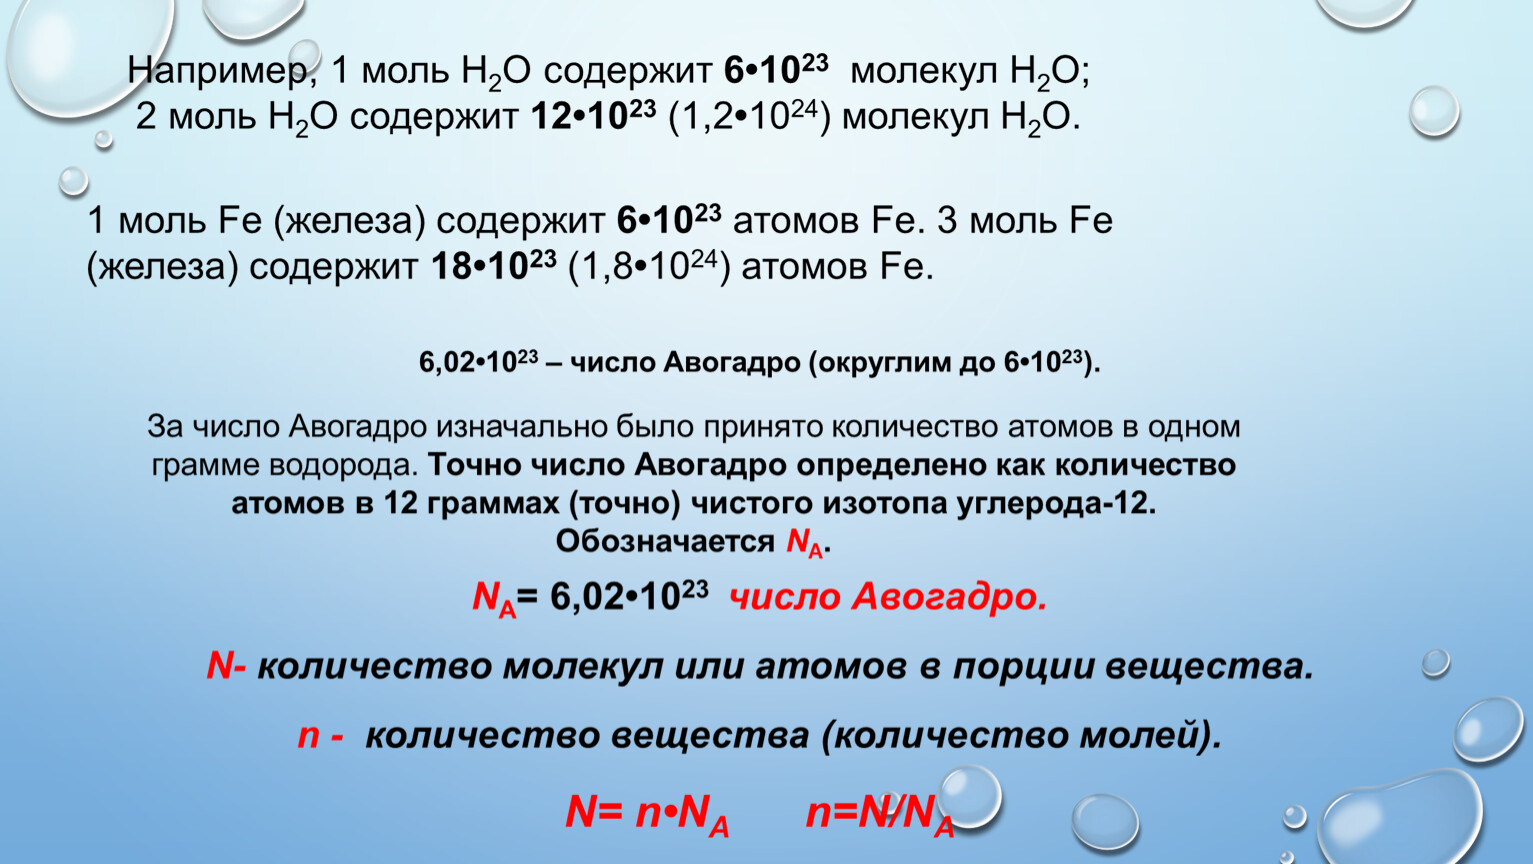 Оксид азота 1 молярная масса. Формула с числом 22,4 Авогадро. Число Авогадро формула в химии. Число Авогадро и молекулярная масса. Молярная масса на число Авогадро.